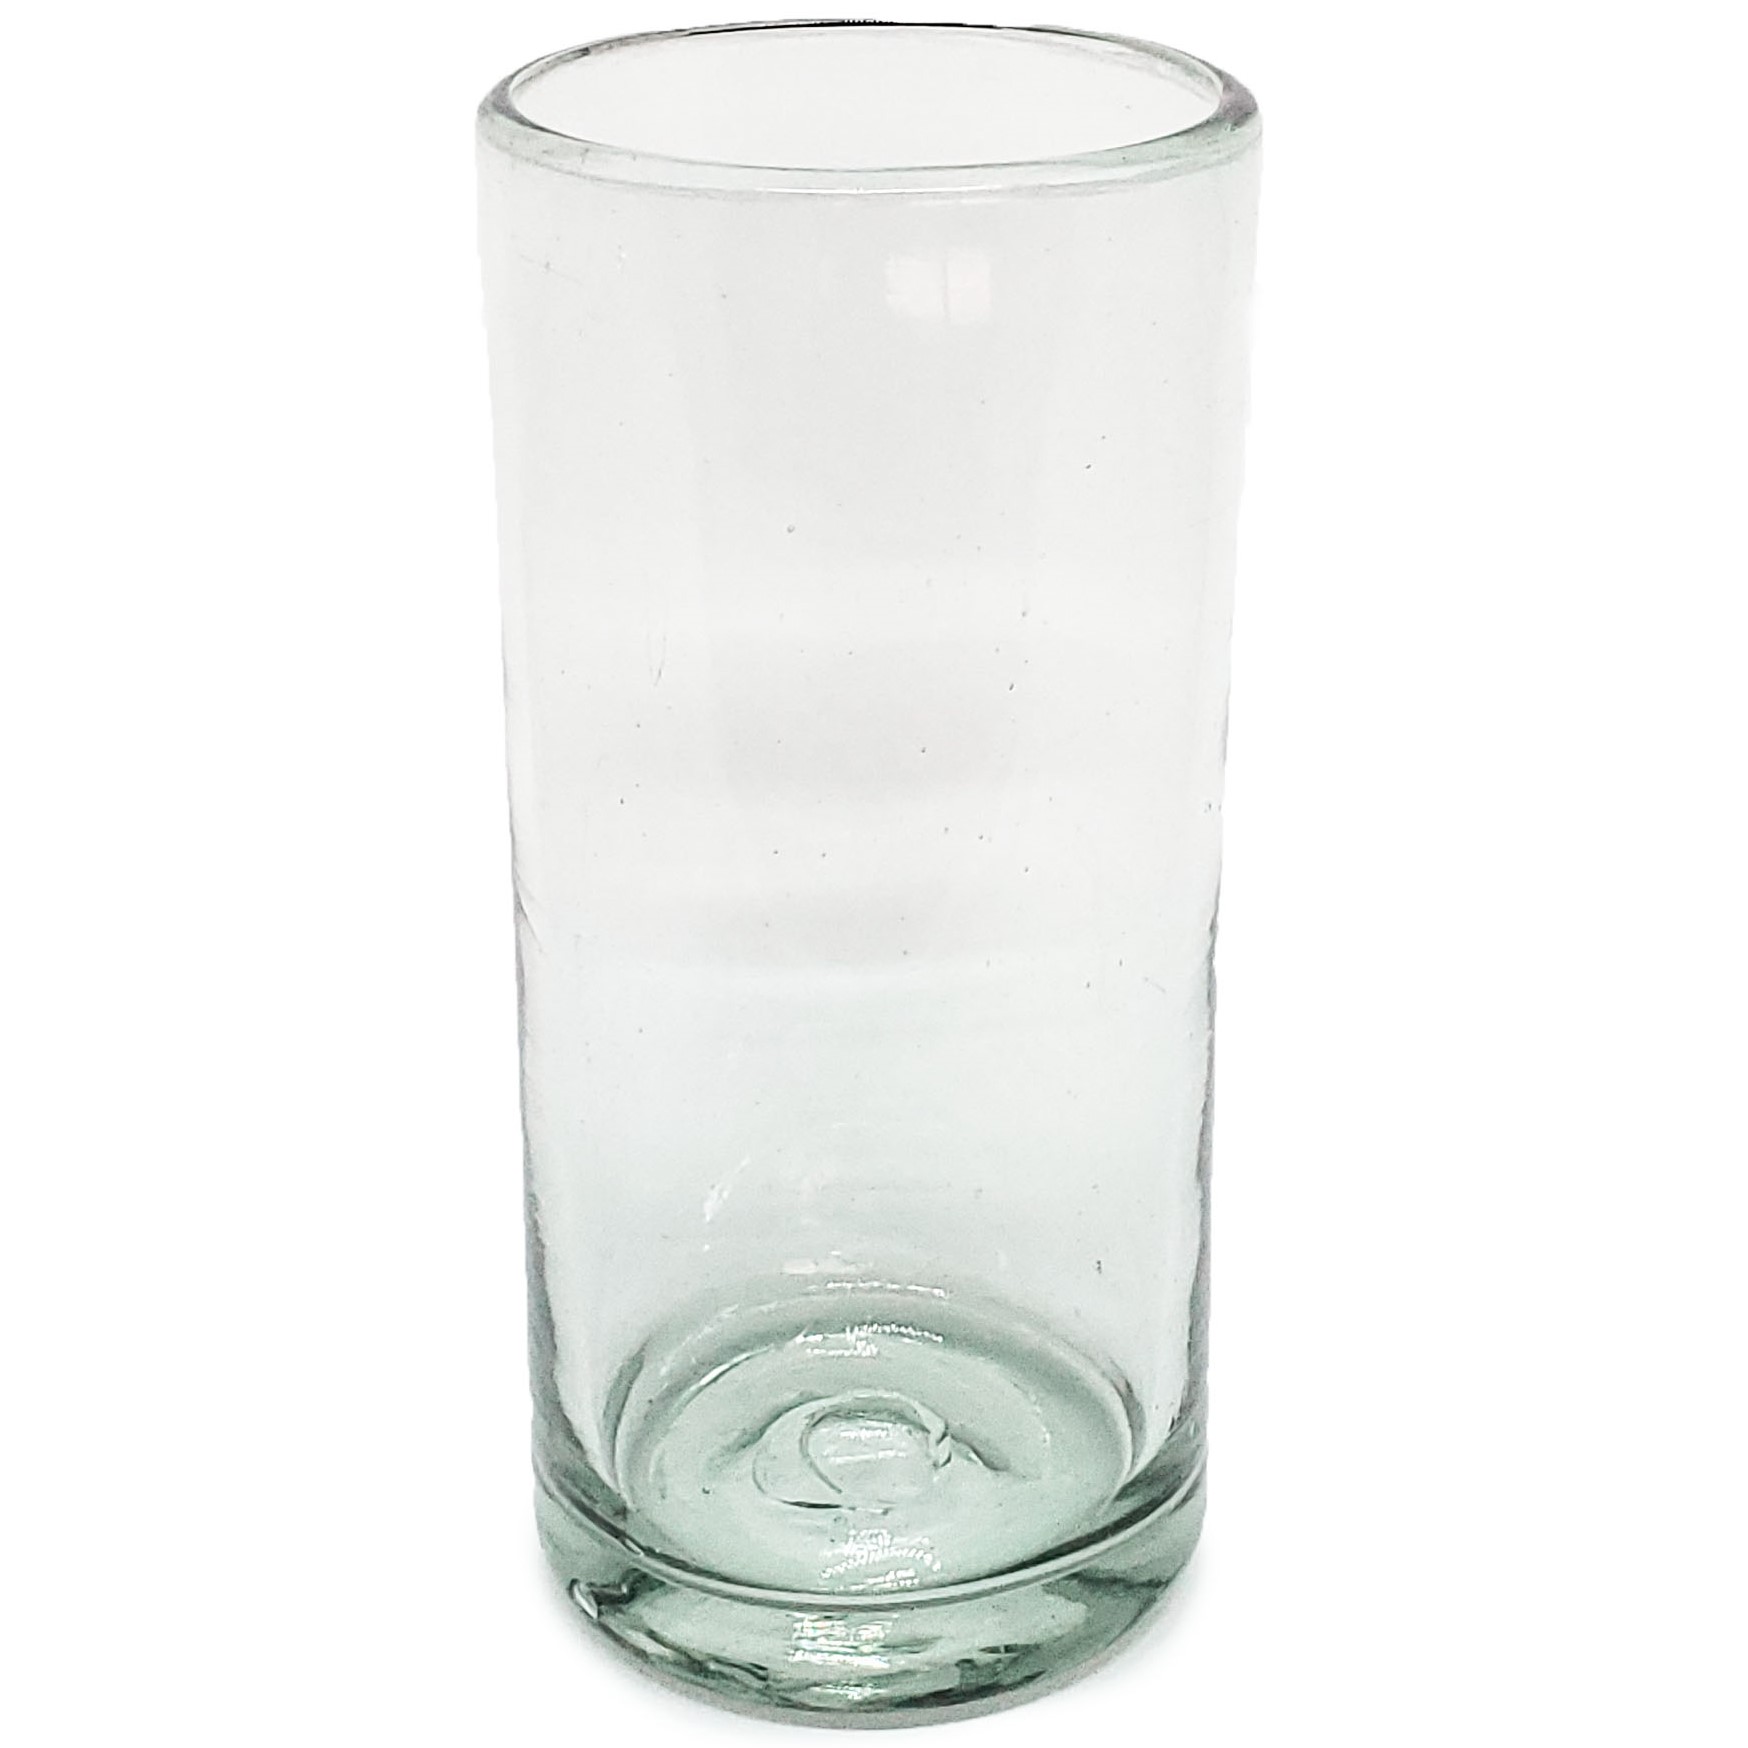 Color Transparente / Juego de 6 vasos Jumbo transparentes / Éste clásico juego de vasos jumbo está hecho con vidrio reciclado. Contiene pequeñas burbujas atrapadas en el vaso.